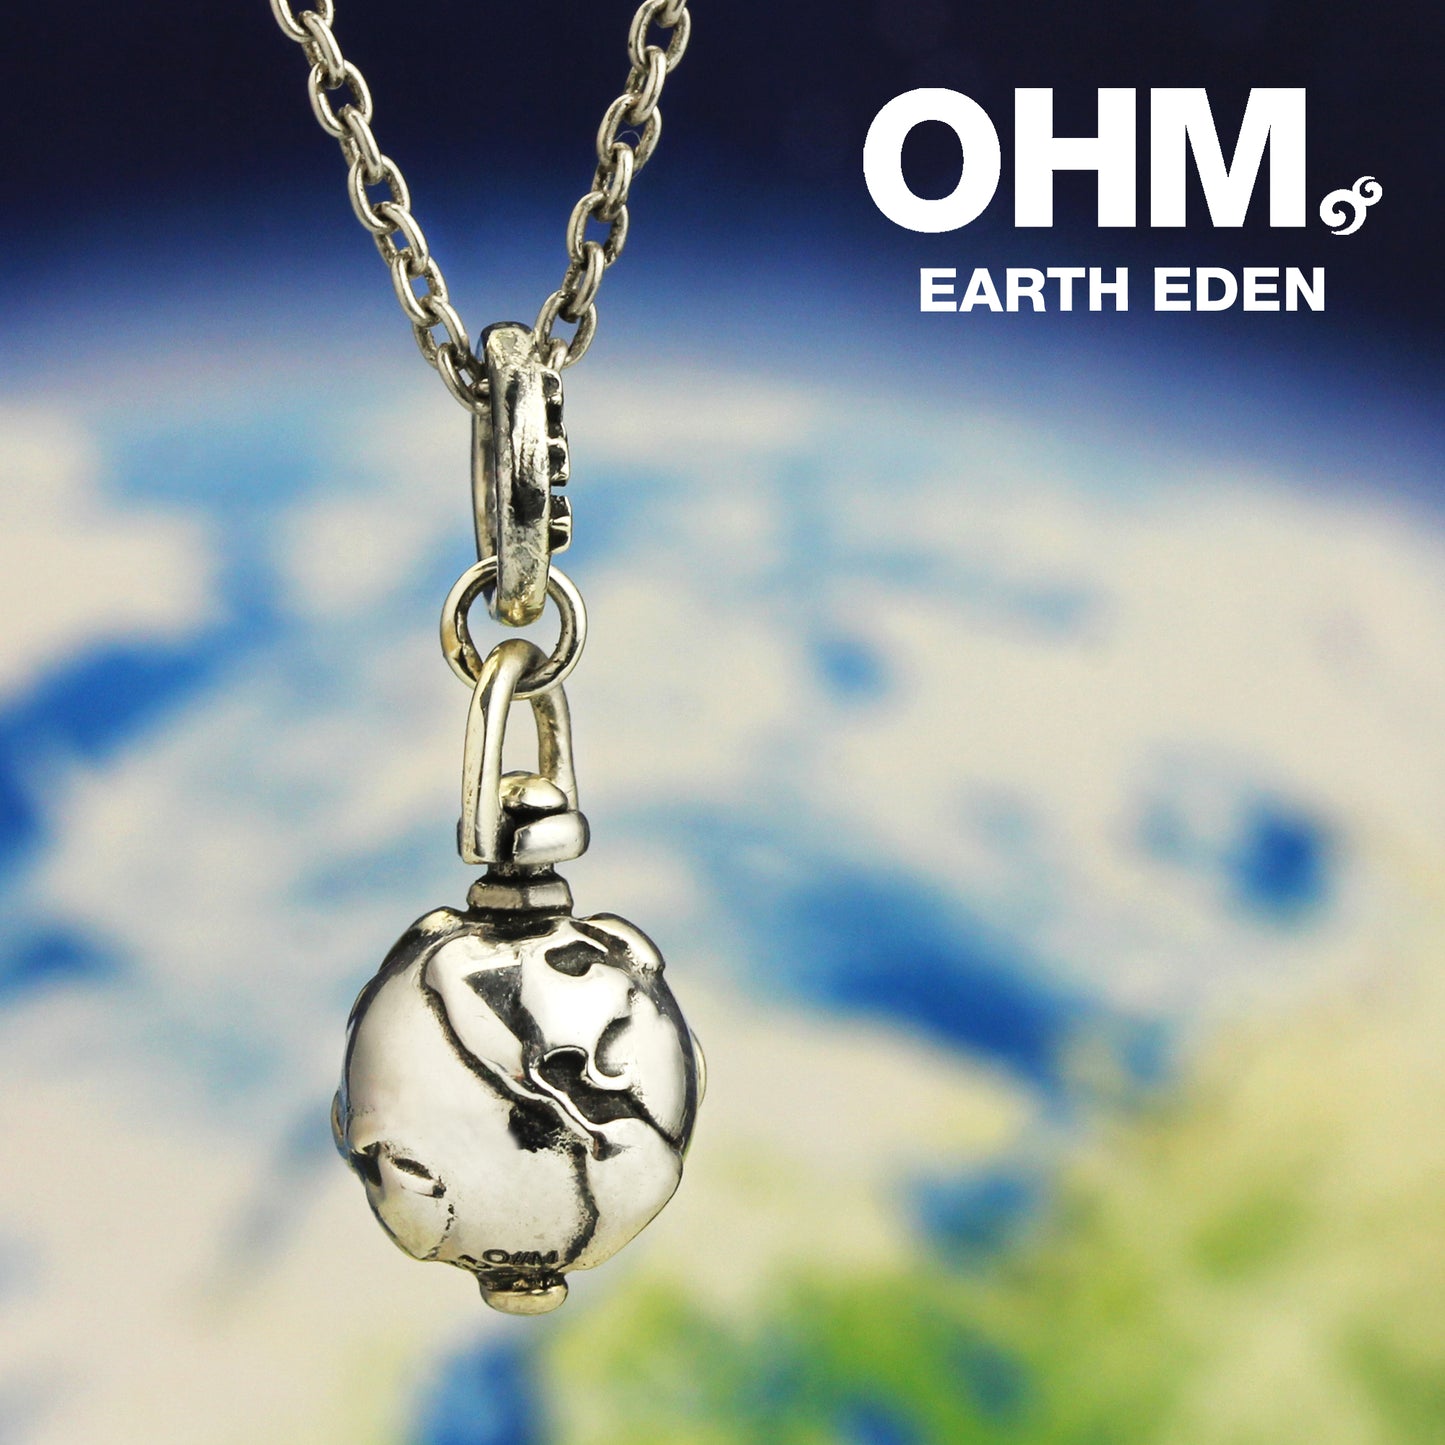 Earth Eden